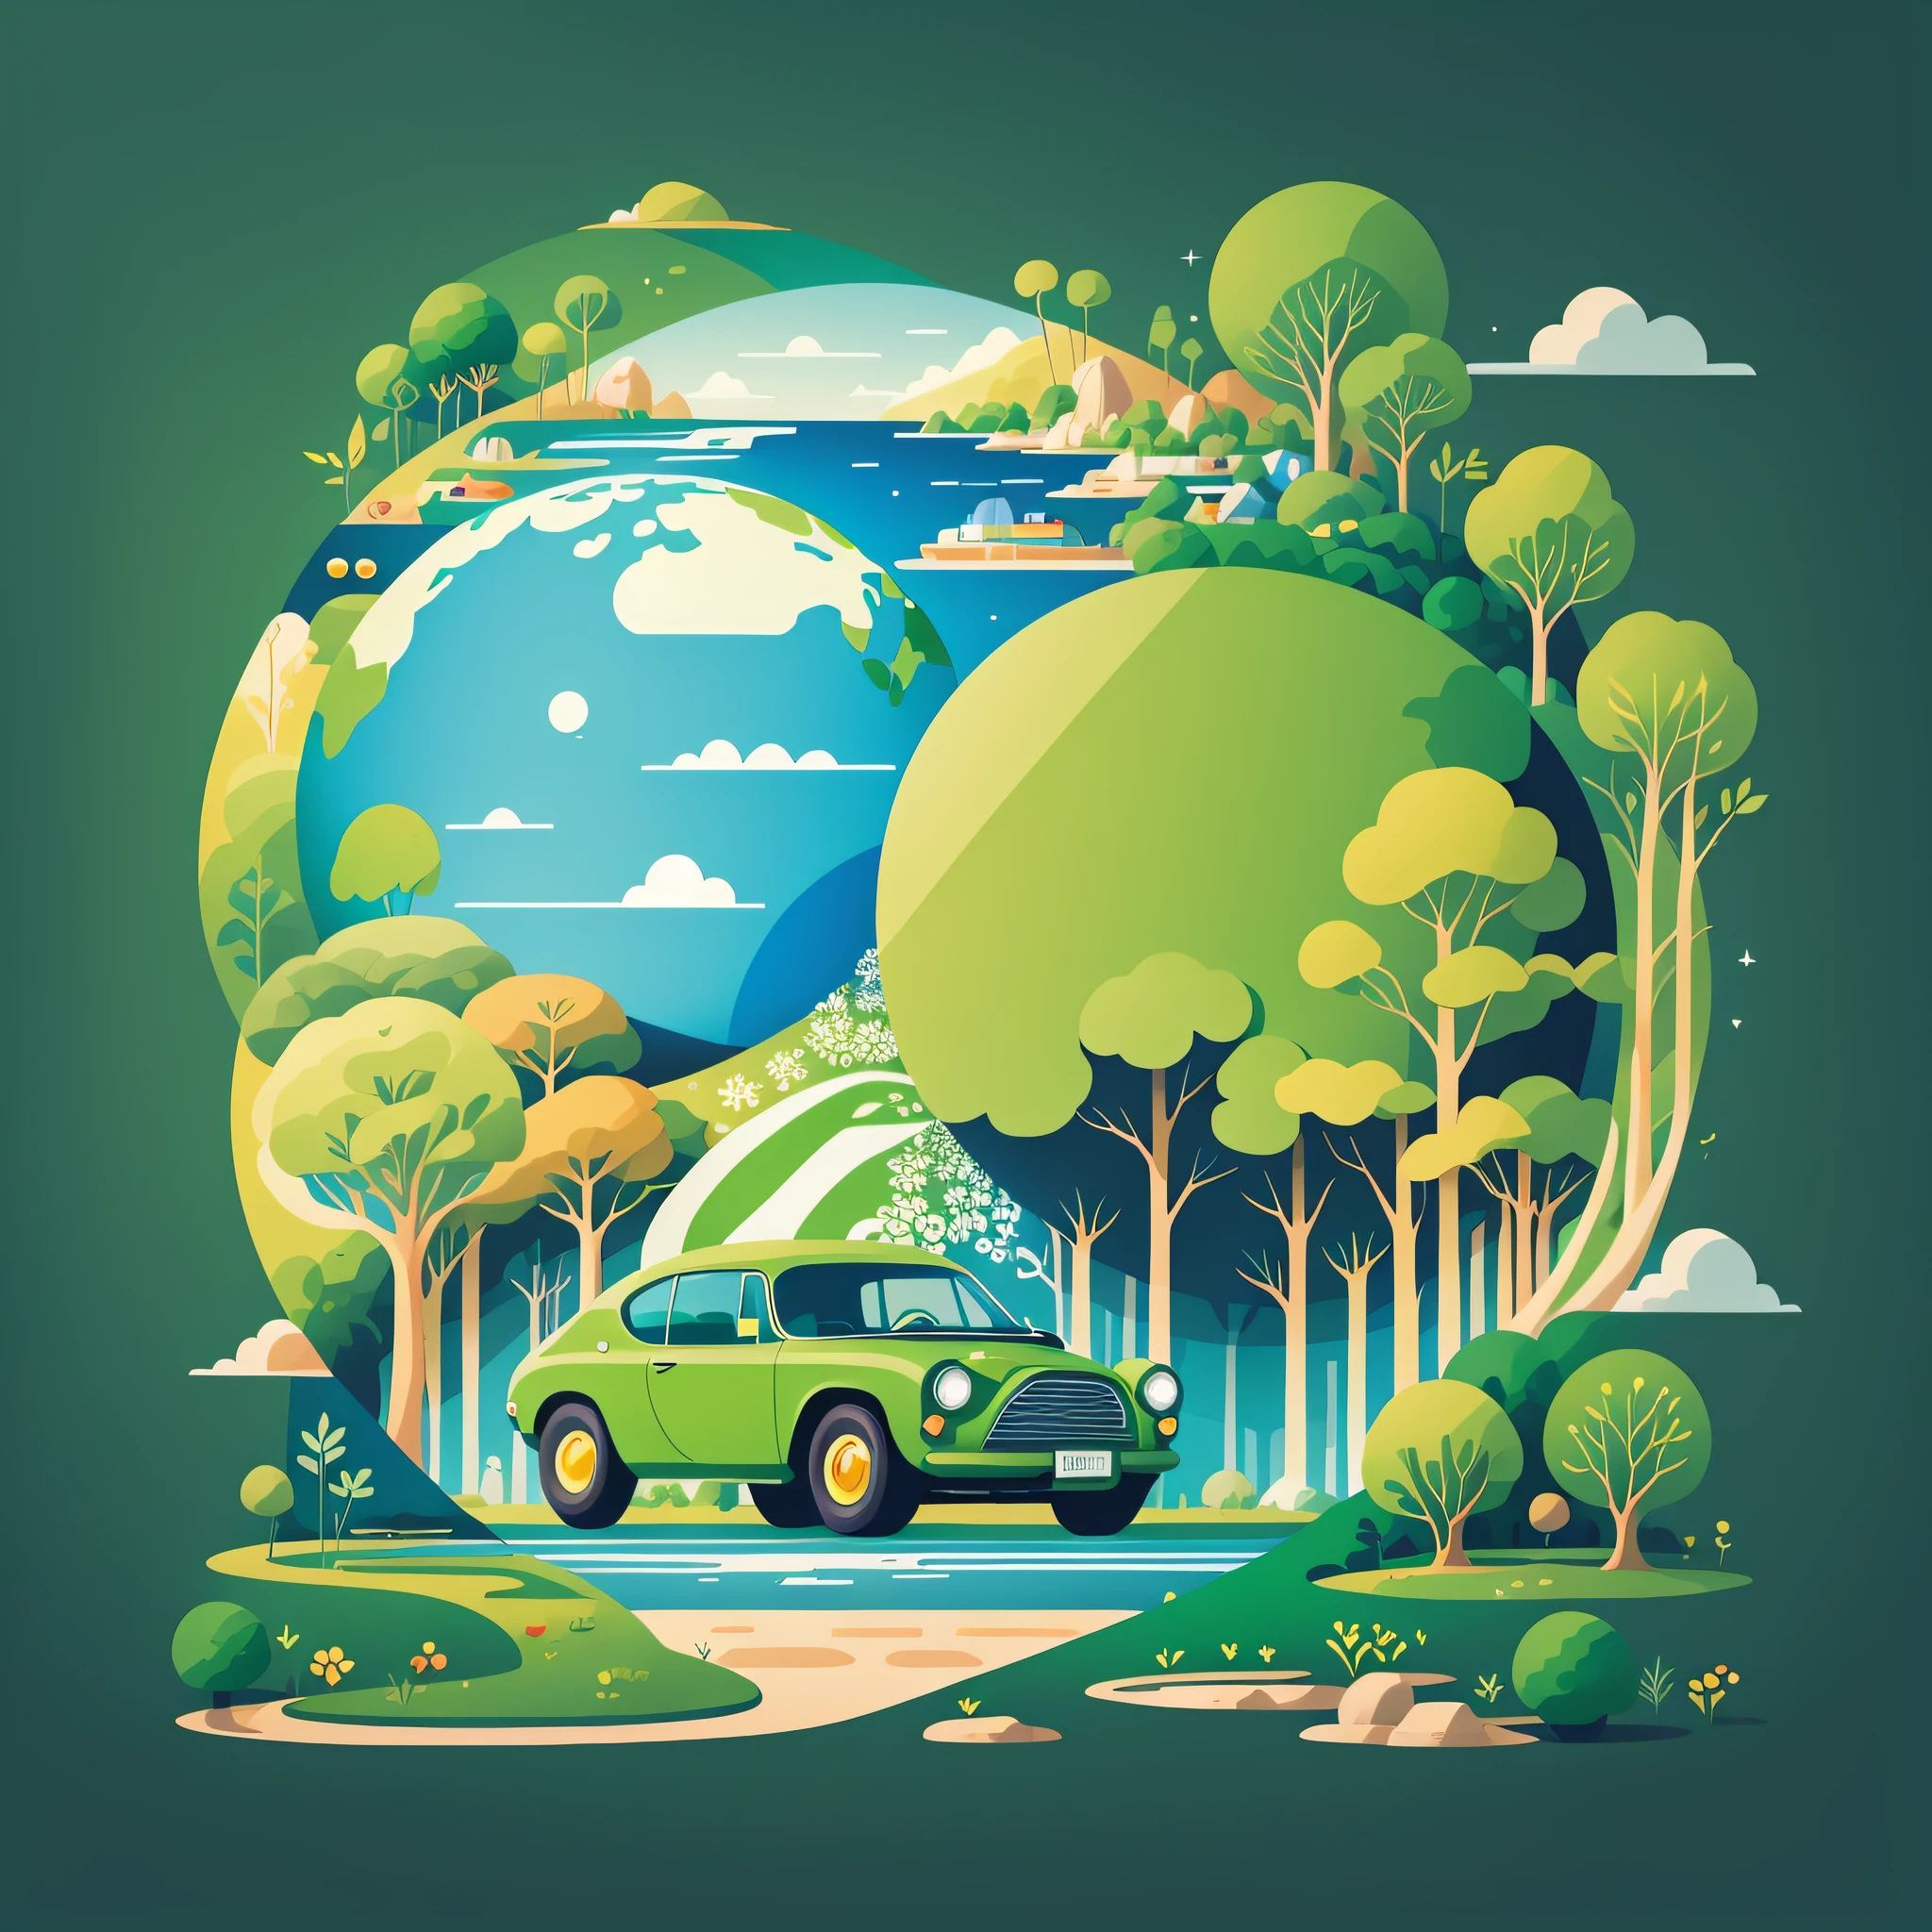 ملصق يوم الأرض, رسم توضيحي مسطح, super cute car in أخضر spherical earth, الأشجار, زهور, منظر جمالي, أزرق, أخضر, أصفر, خلفية بسيطة, تكوين المركز, الوان براقة, chiaroscuro, تفاصيل عالية للغاية, 4K, رسم توضيحي مسطح --auto --s2